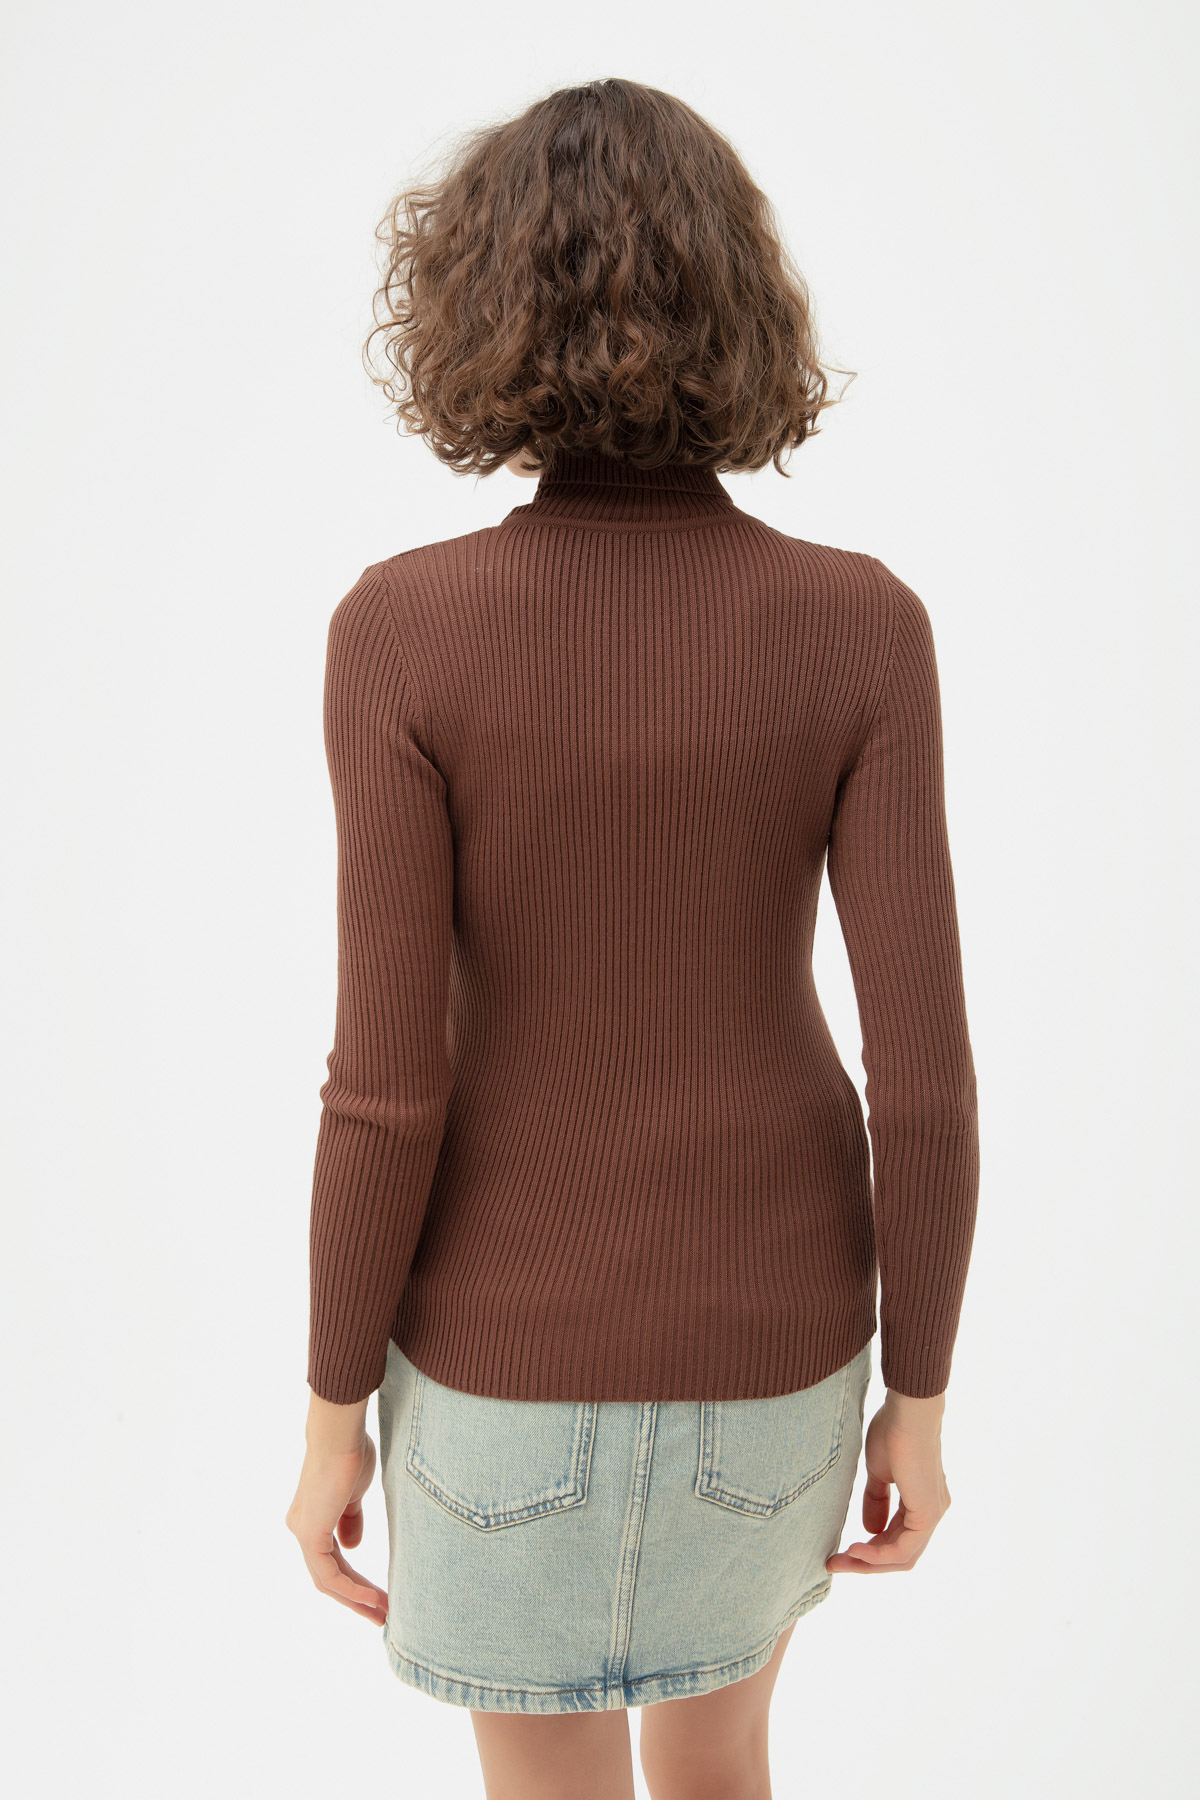 Women's Brown Turtleneck Knitwear Sweater